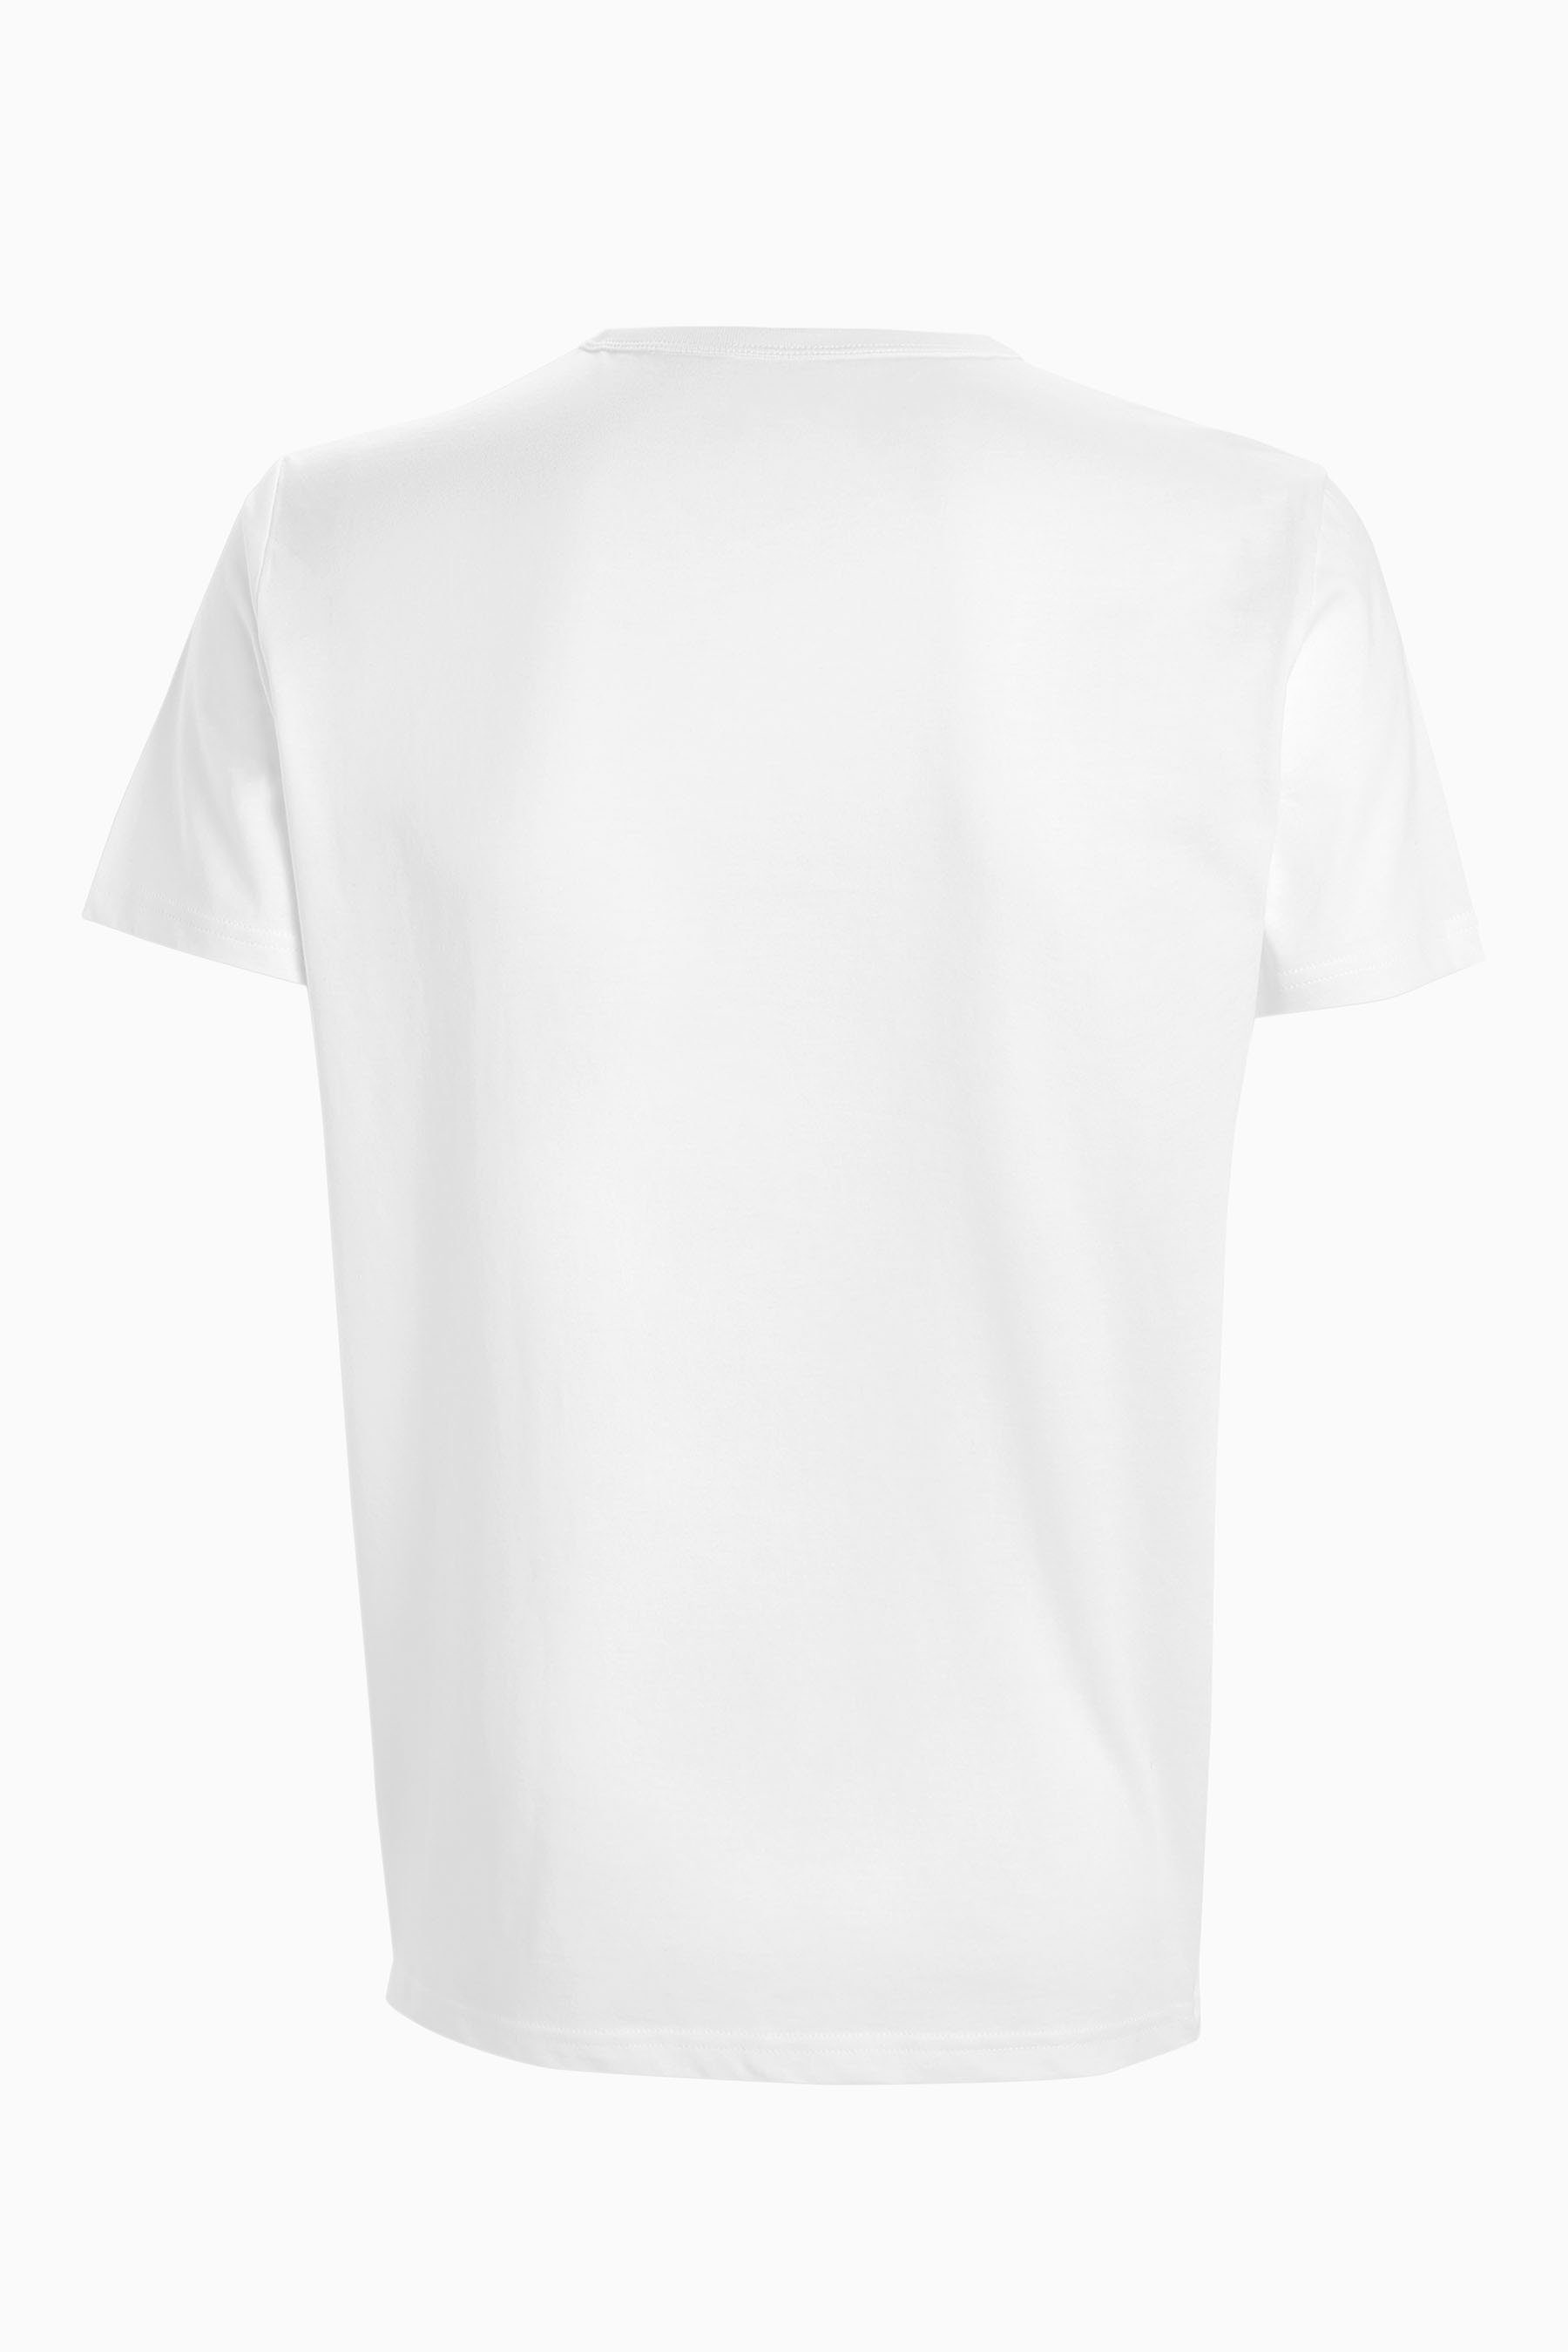 Unterhemd Next White (5-St)